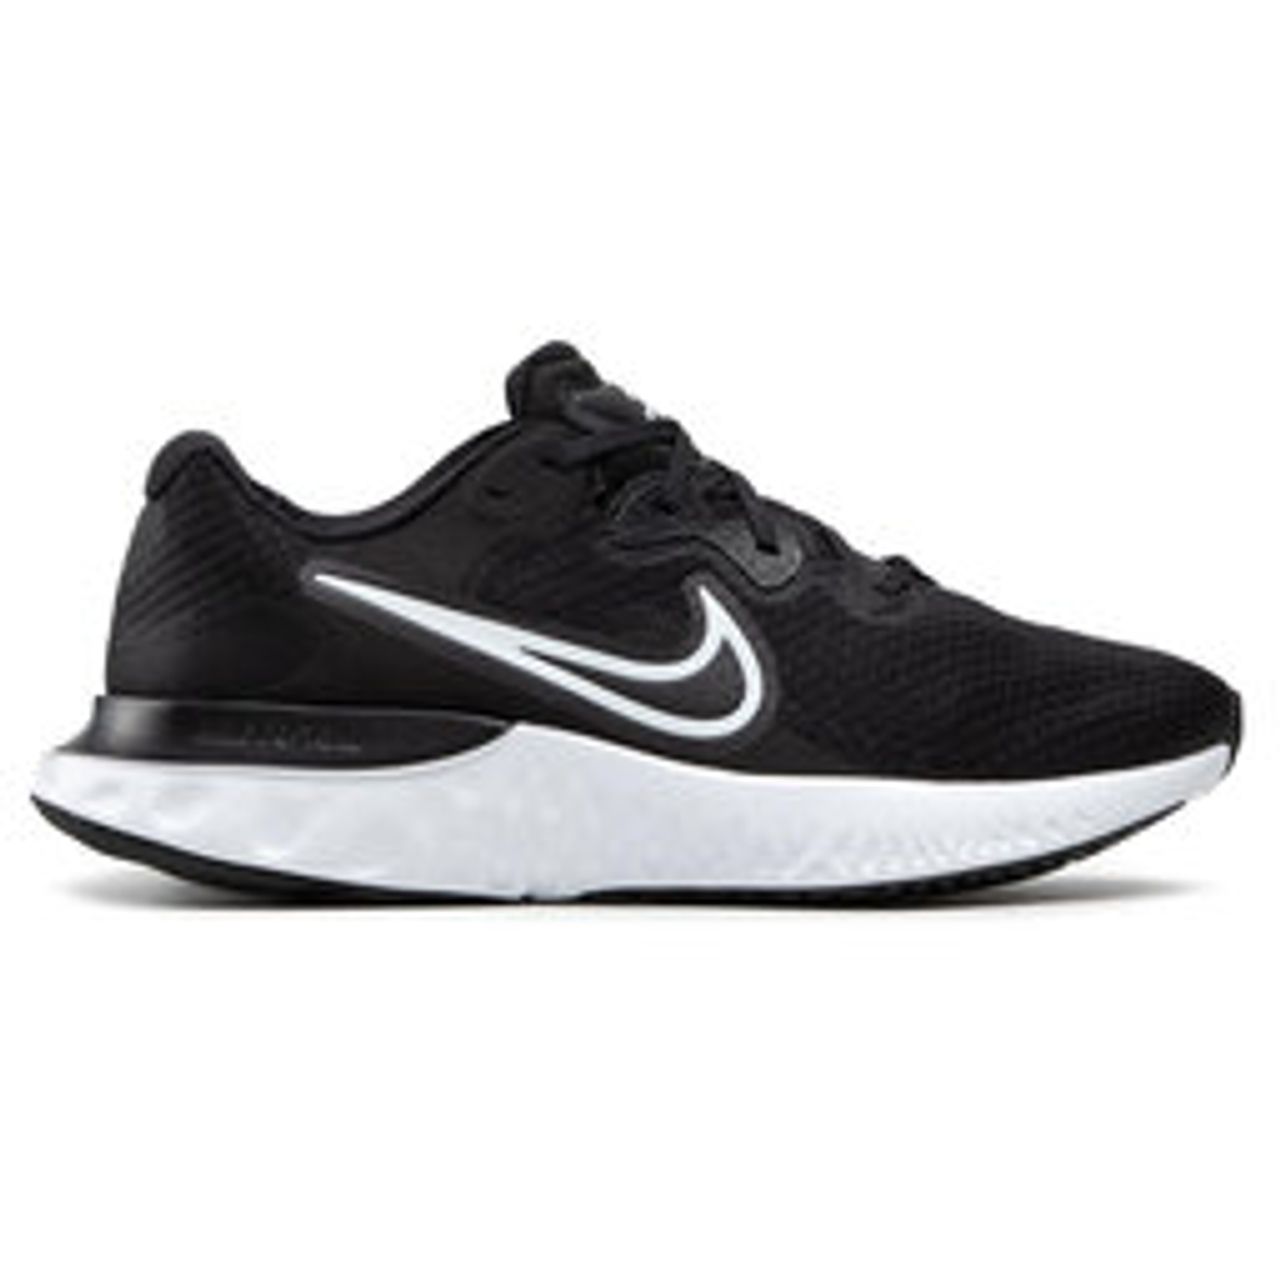 Schuhe Nike Renew Run 2 CU3504 005 Black/White/Dk Smoke Grey